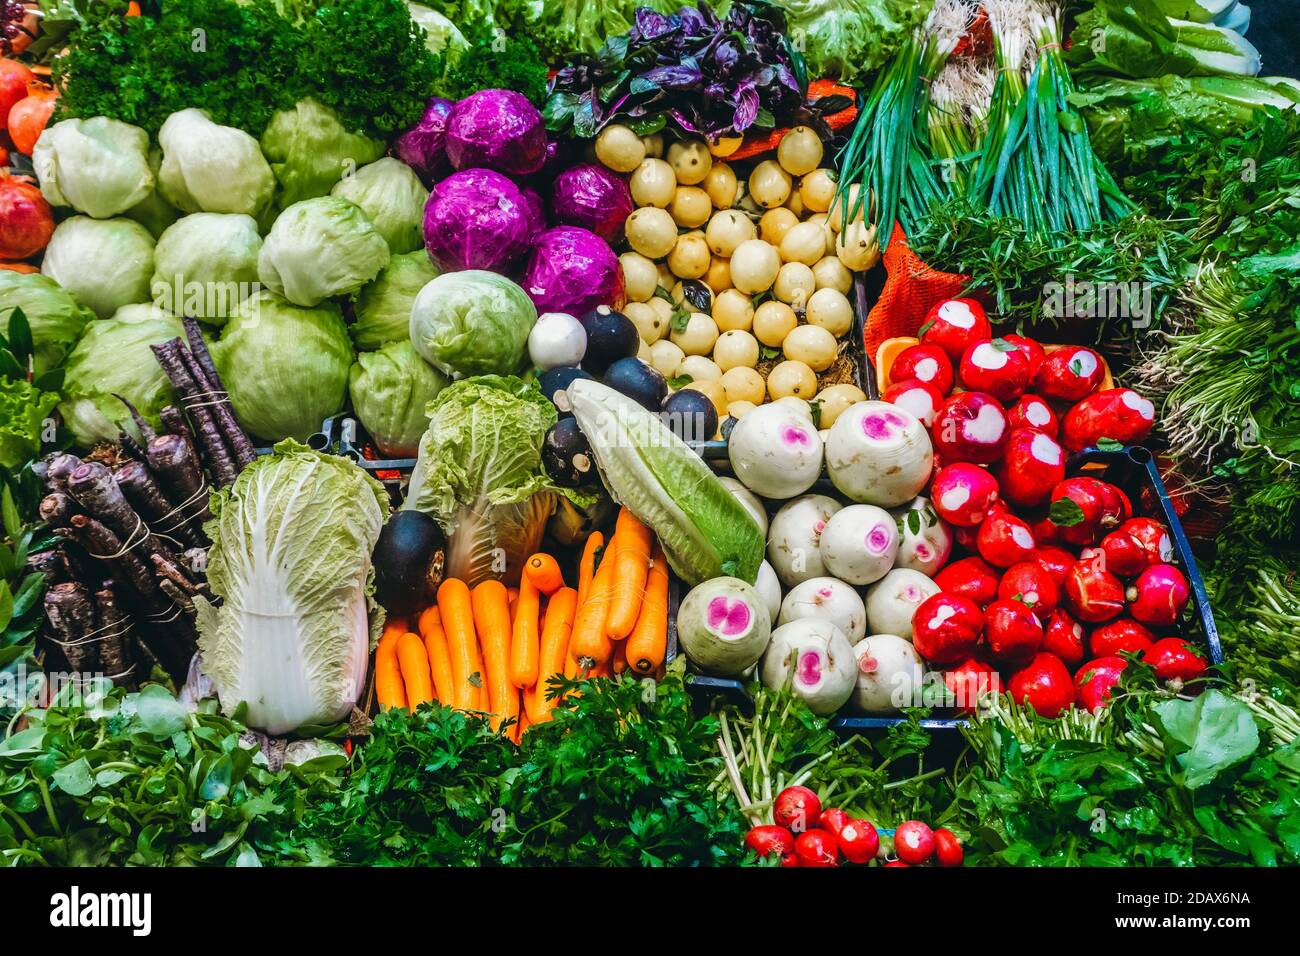 Fondo de verduras frescas, hierbas y frutas en el mostrador del